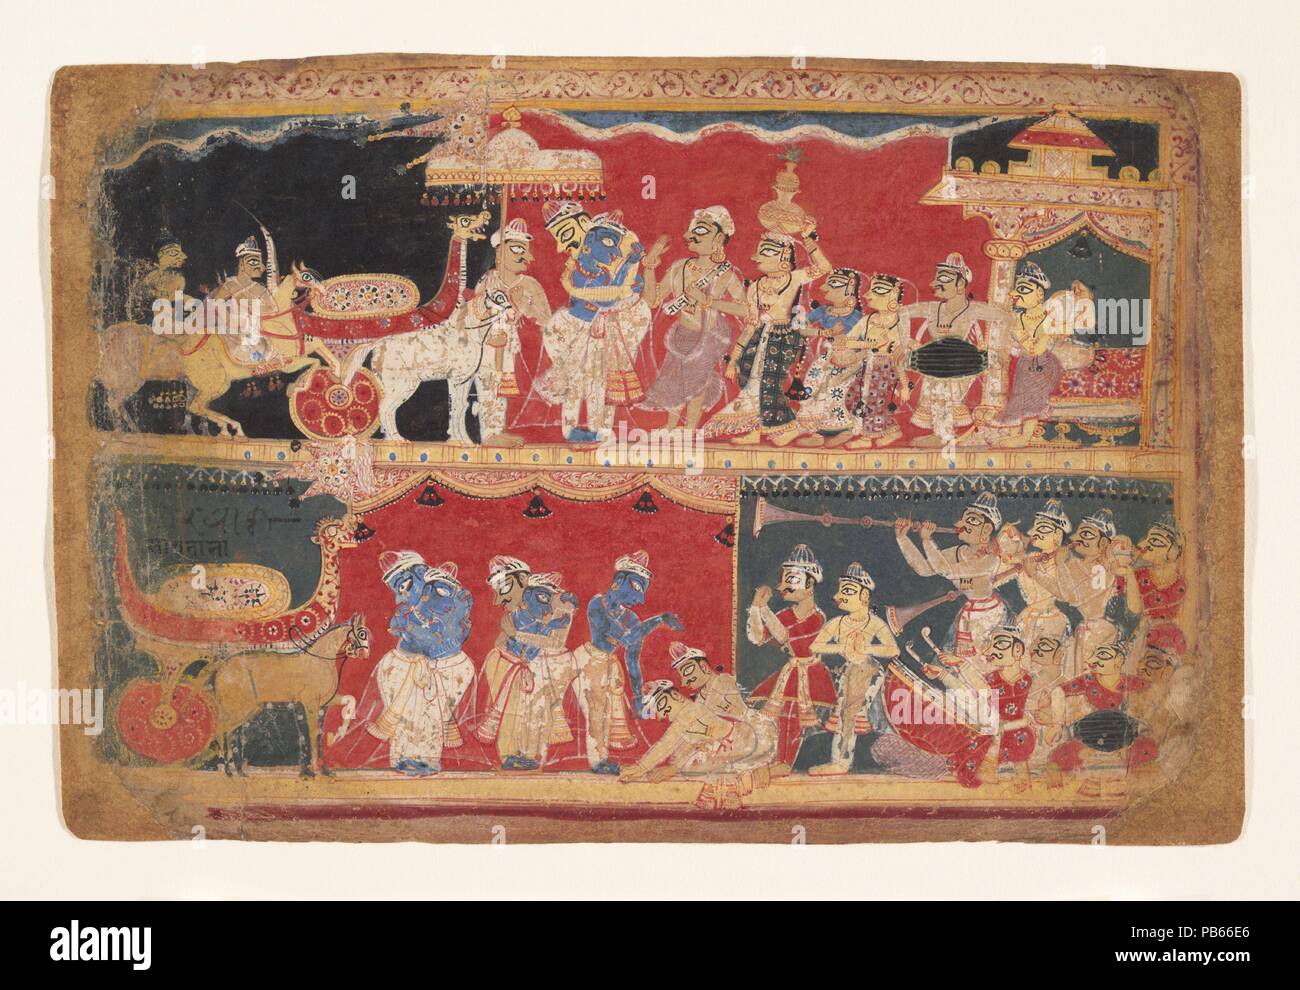 Krishna es acogido en Mathura: página desde un dispersa Bhagavata Purana manuscrito. Cultura: India (Delhi, Agra área). Dimensiones: 6 7/16 x 9 1/8 pulg. (16,4 x 23,2 cm). Fecha: ca. 1520-40. Los registros superiores e inferiores ilustran la entrada de Krishna en Mathura, donde acabará por enfrentar y matar al malvado rey Kamsa. El Bhagavata Purana describe detalladamente la alegre bienvenida que recibió, especialmente por las mujeres de la ciudad, quienes abandonaron lo que estaban haciendo y corrieron a verlo. La emoción del momento es enfatizada por los músicos en ambos registros y la aparición de Kris Foto de stock